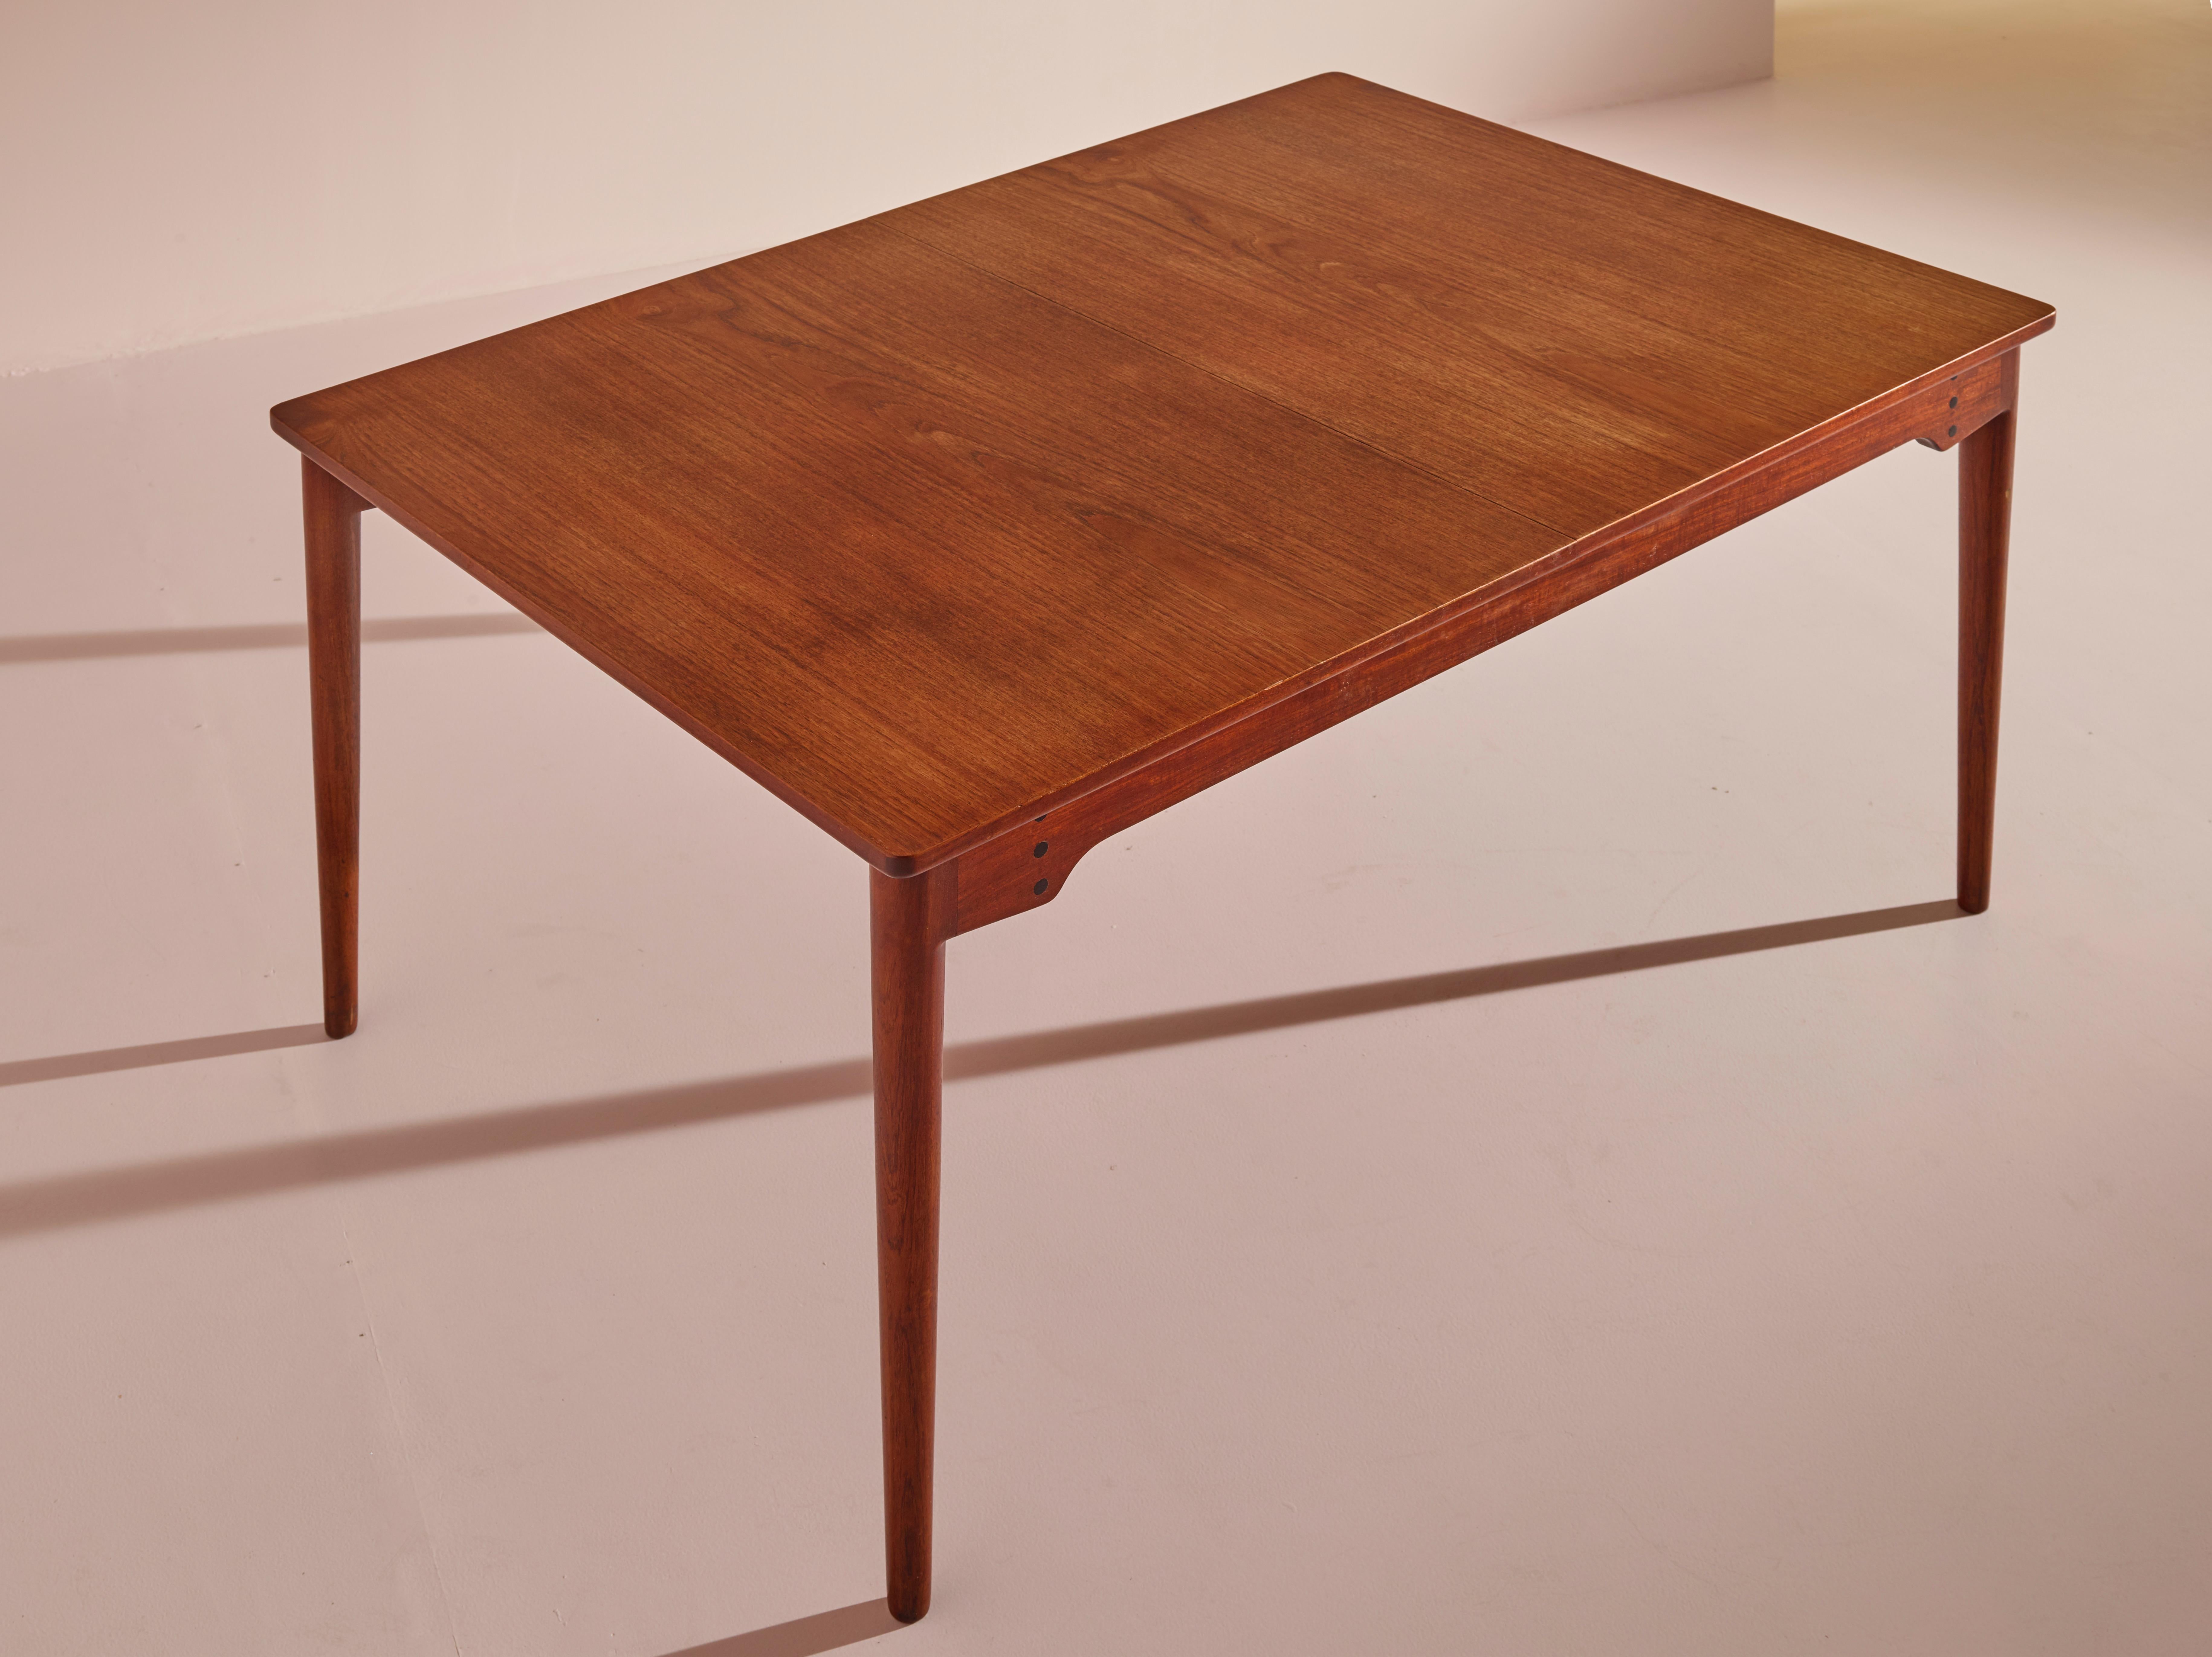 Finn Juhl Model B065 teak extendable dining table for Bovirke, Denmark, 1950s For Sale 1